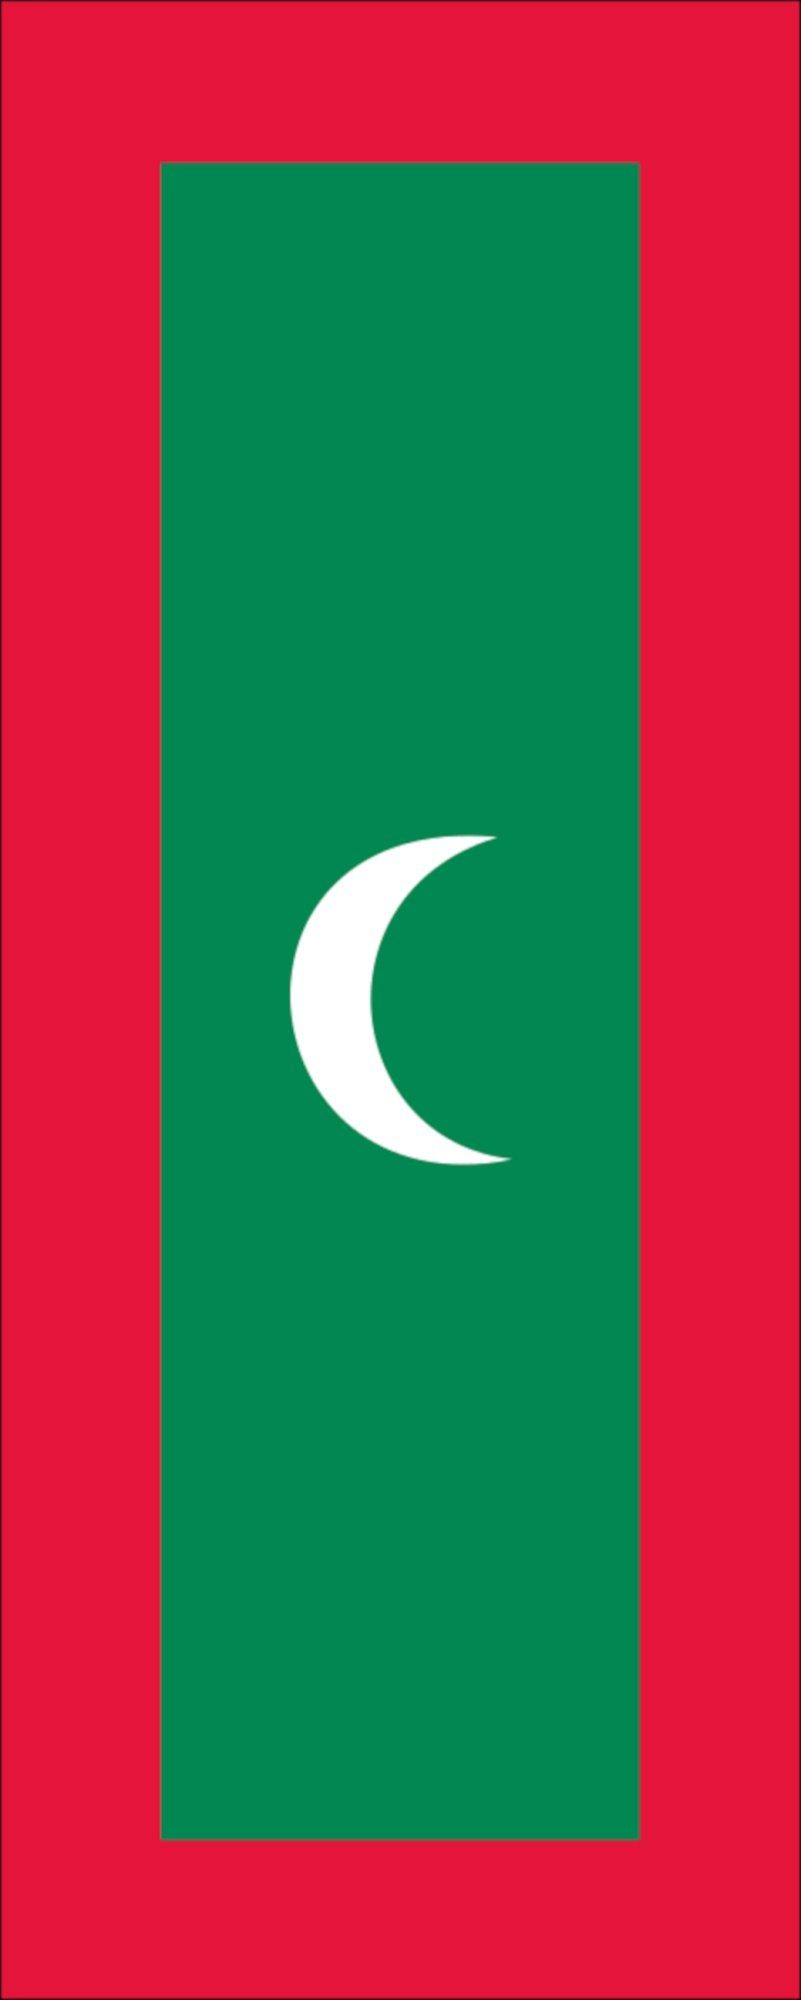 g/m² Flagge Flagge flaggenmeer 110 Malediven Hochformat